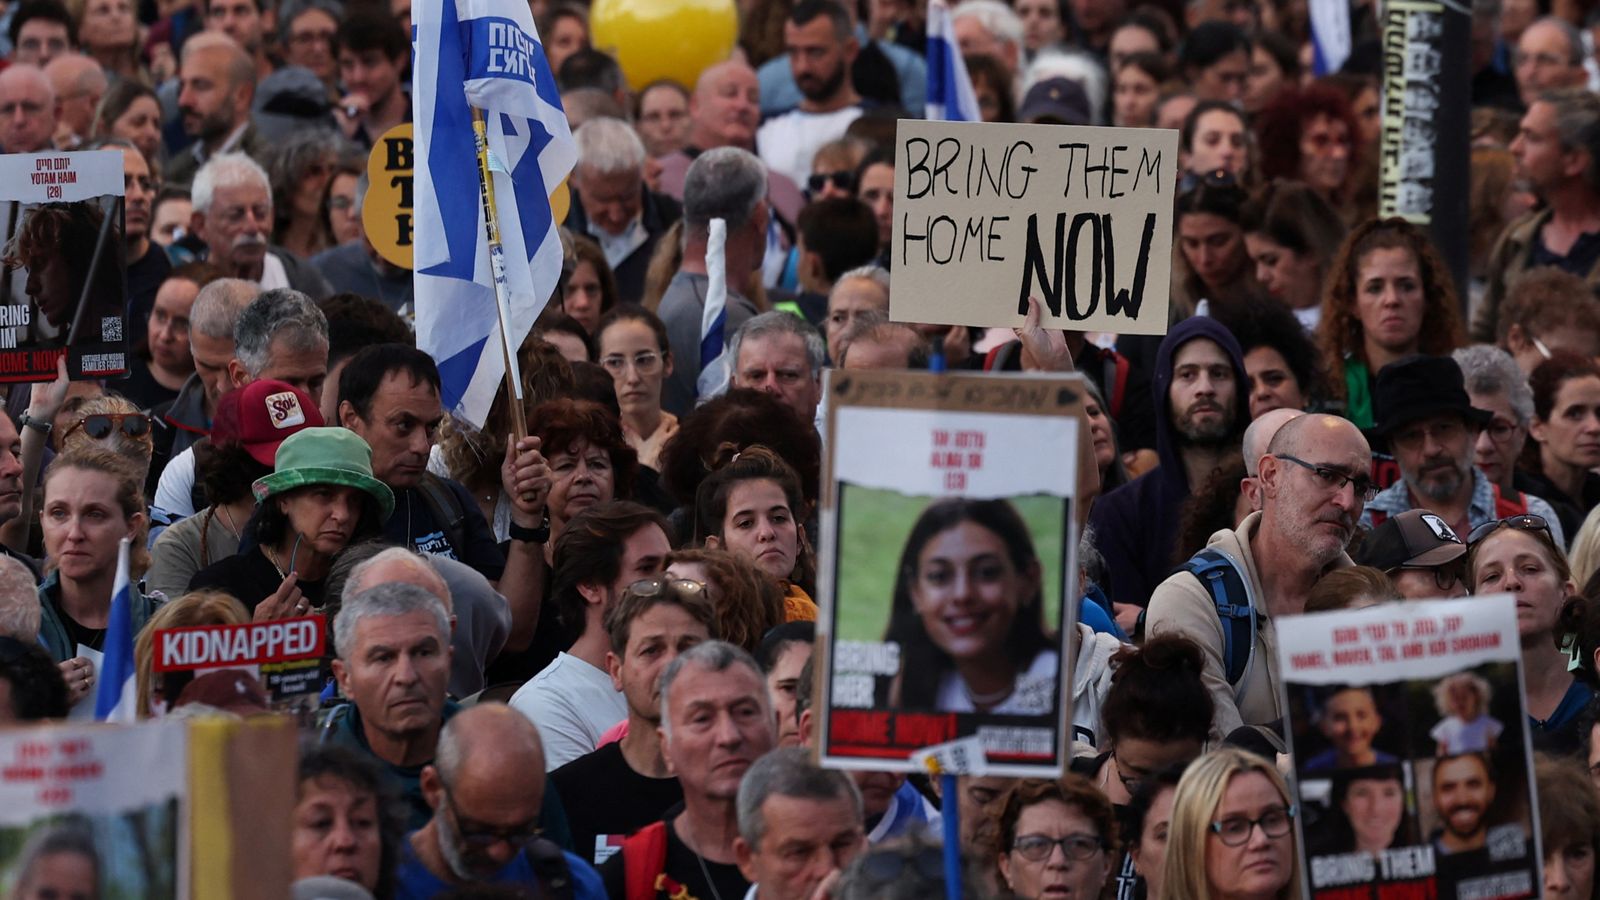 Israele, i familiari degli ostaggi chiedono di non approvare la pena di morte voluta dalla destra estrema